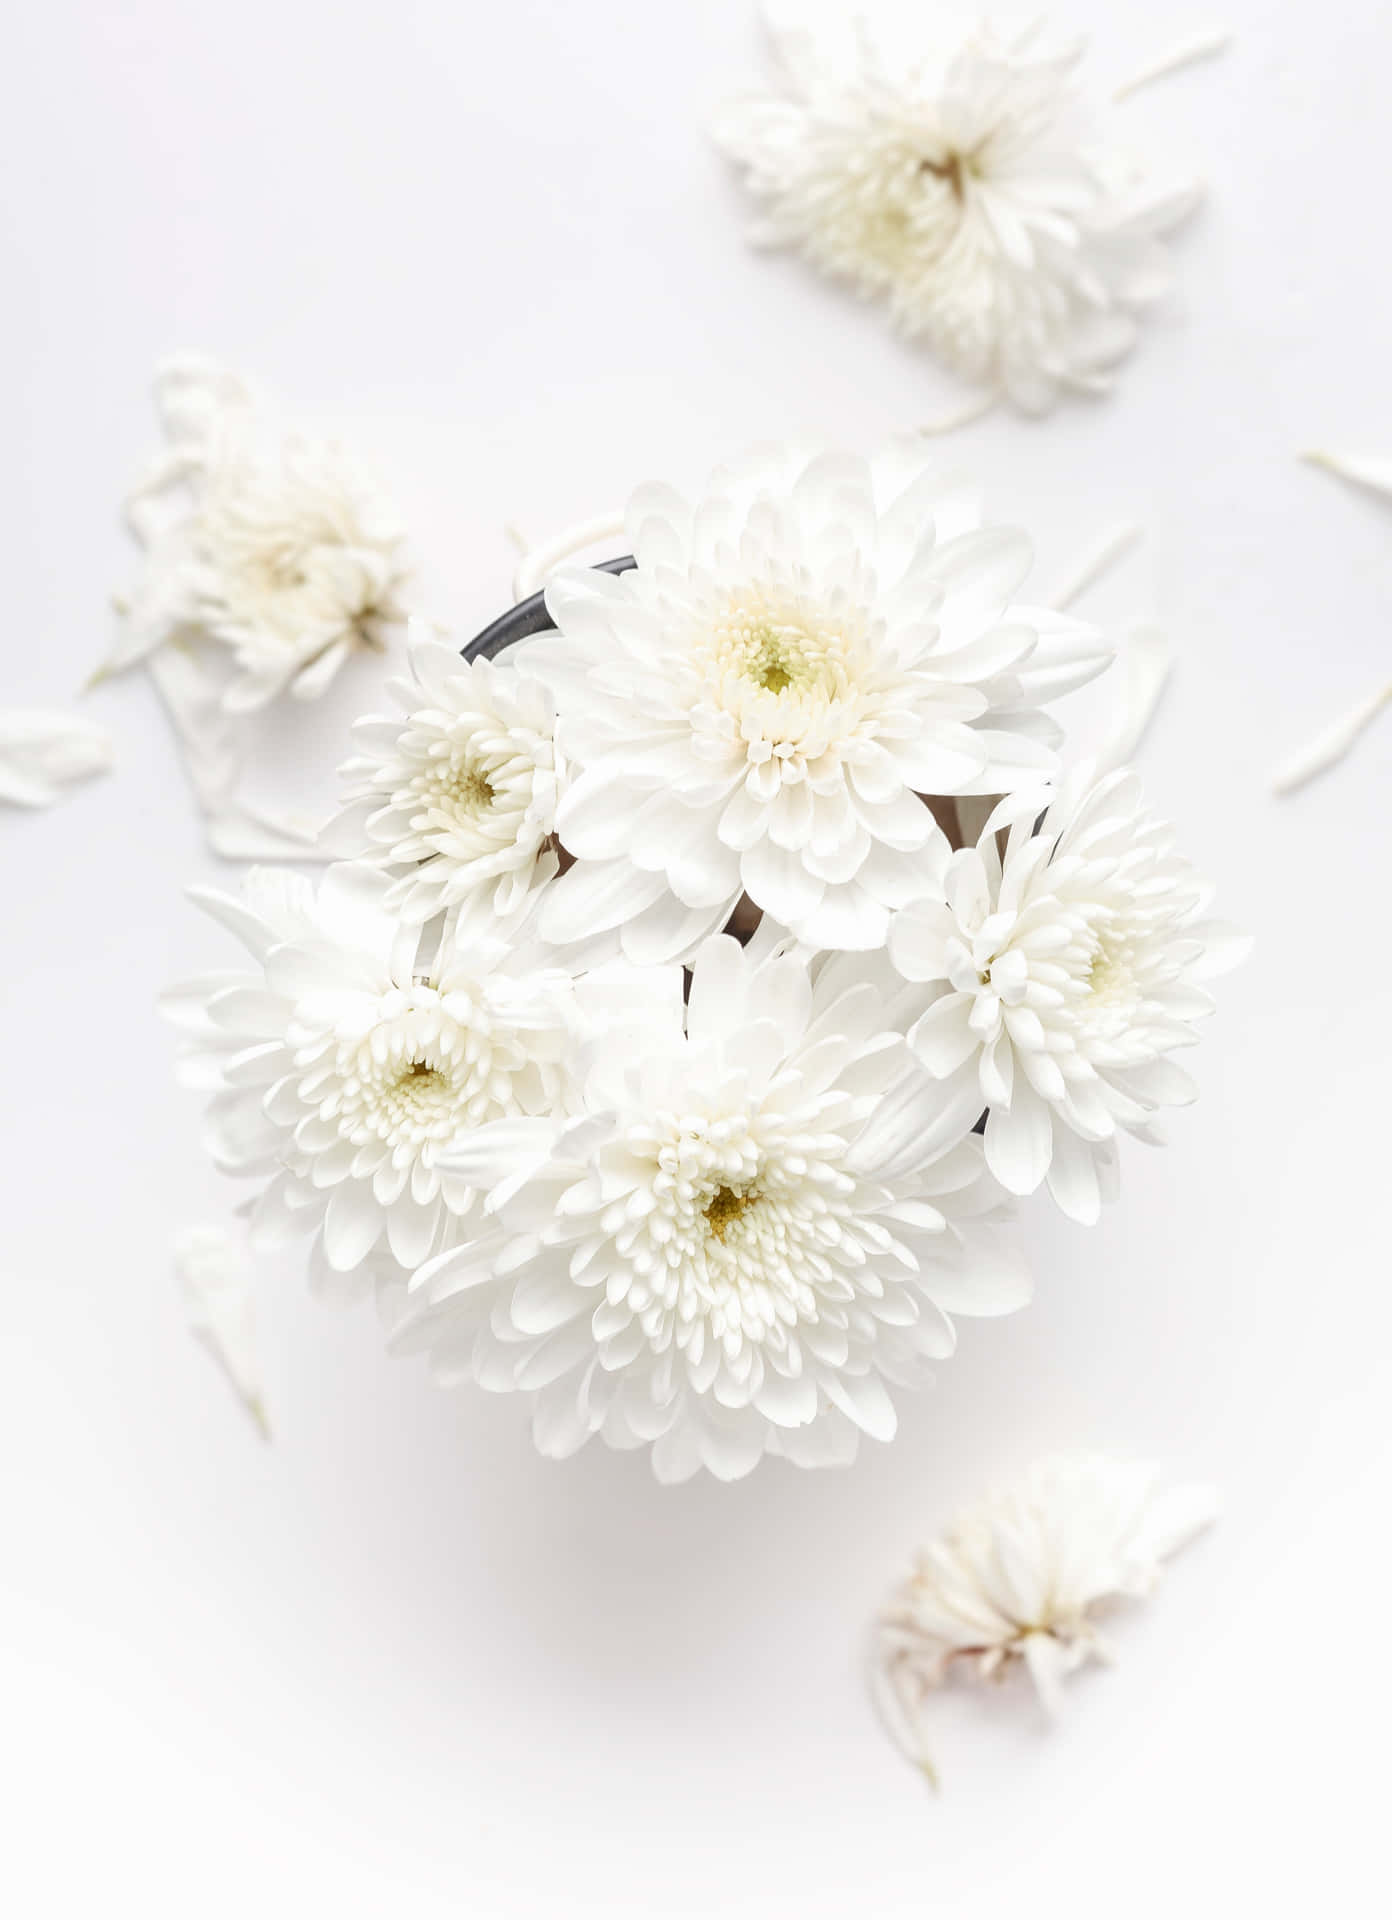 Serene Beauty Of White Flowers